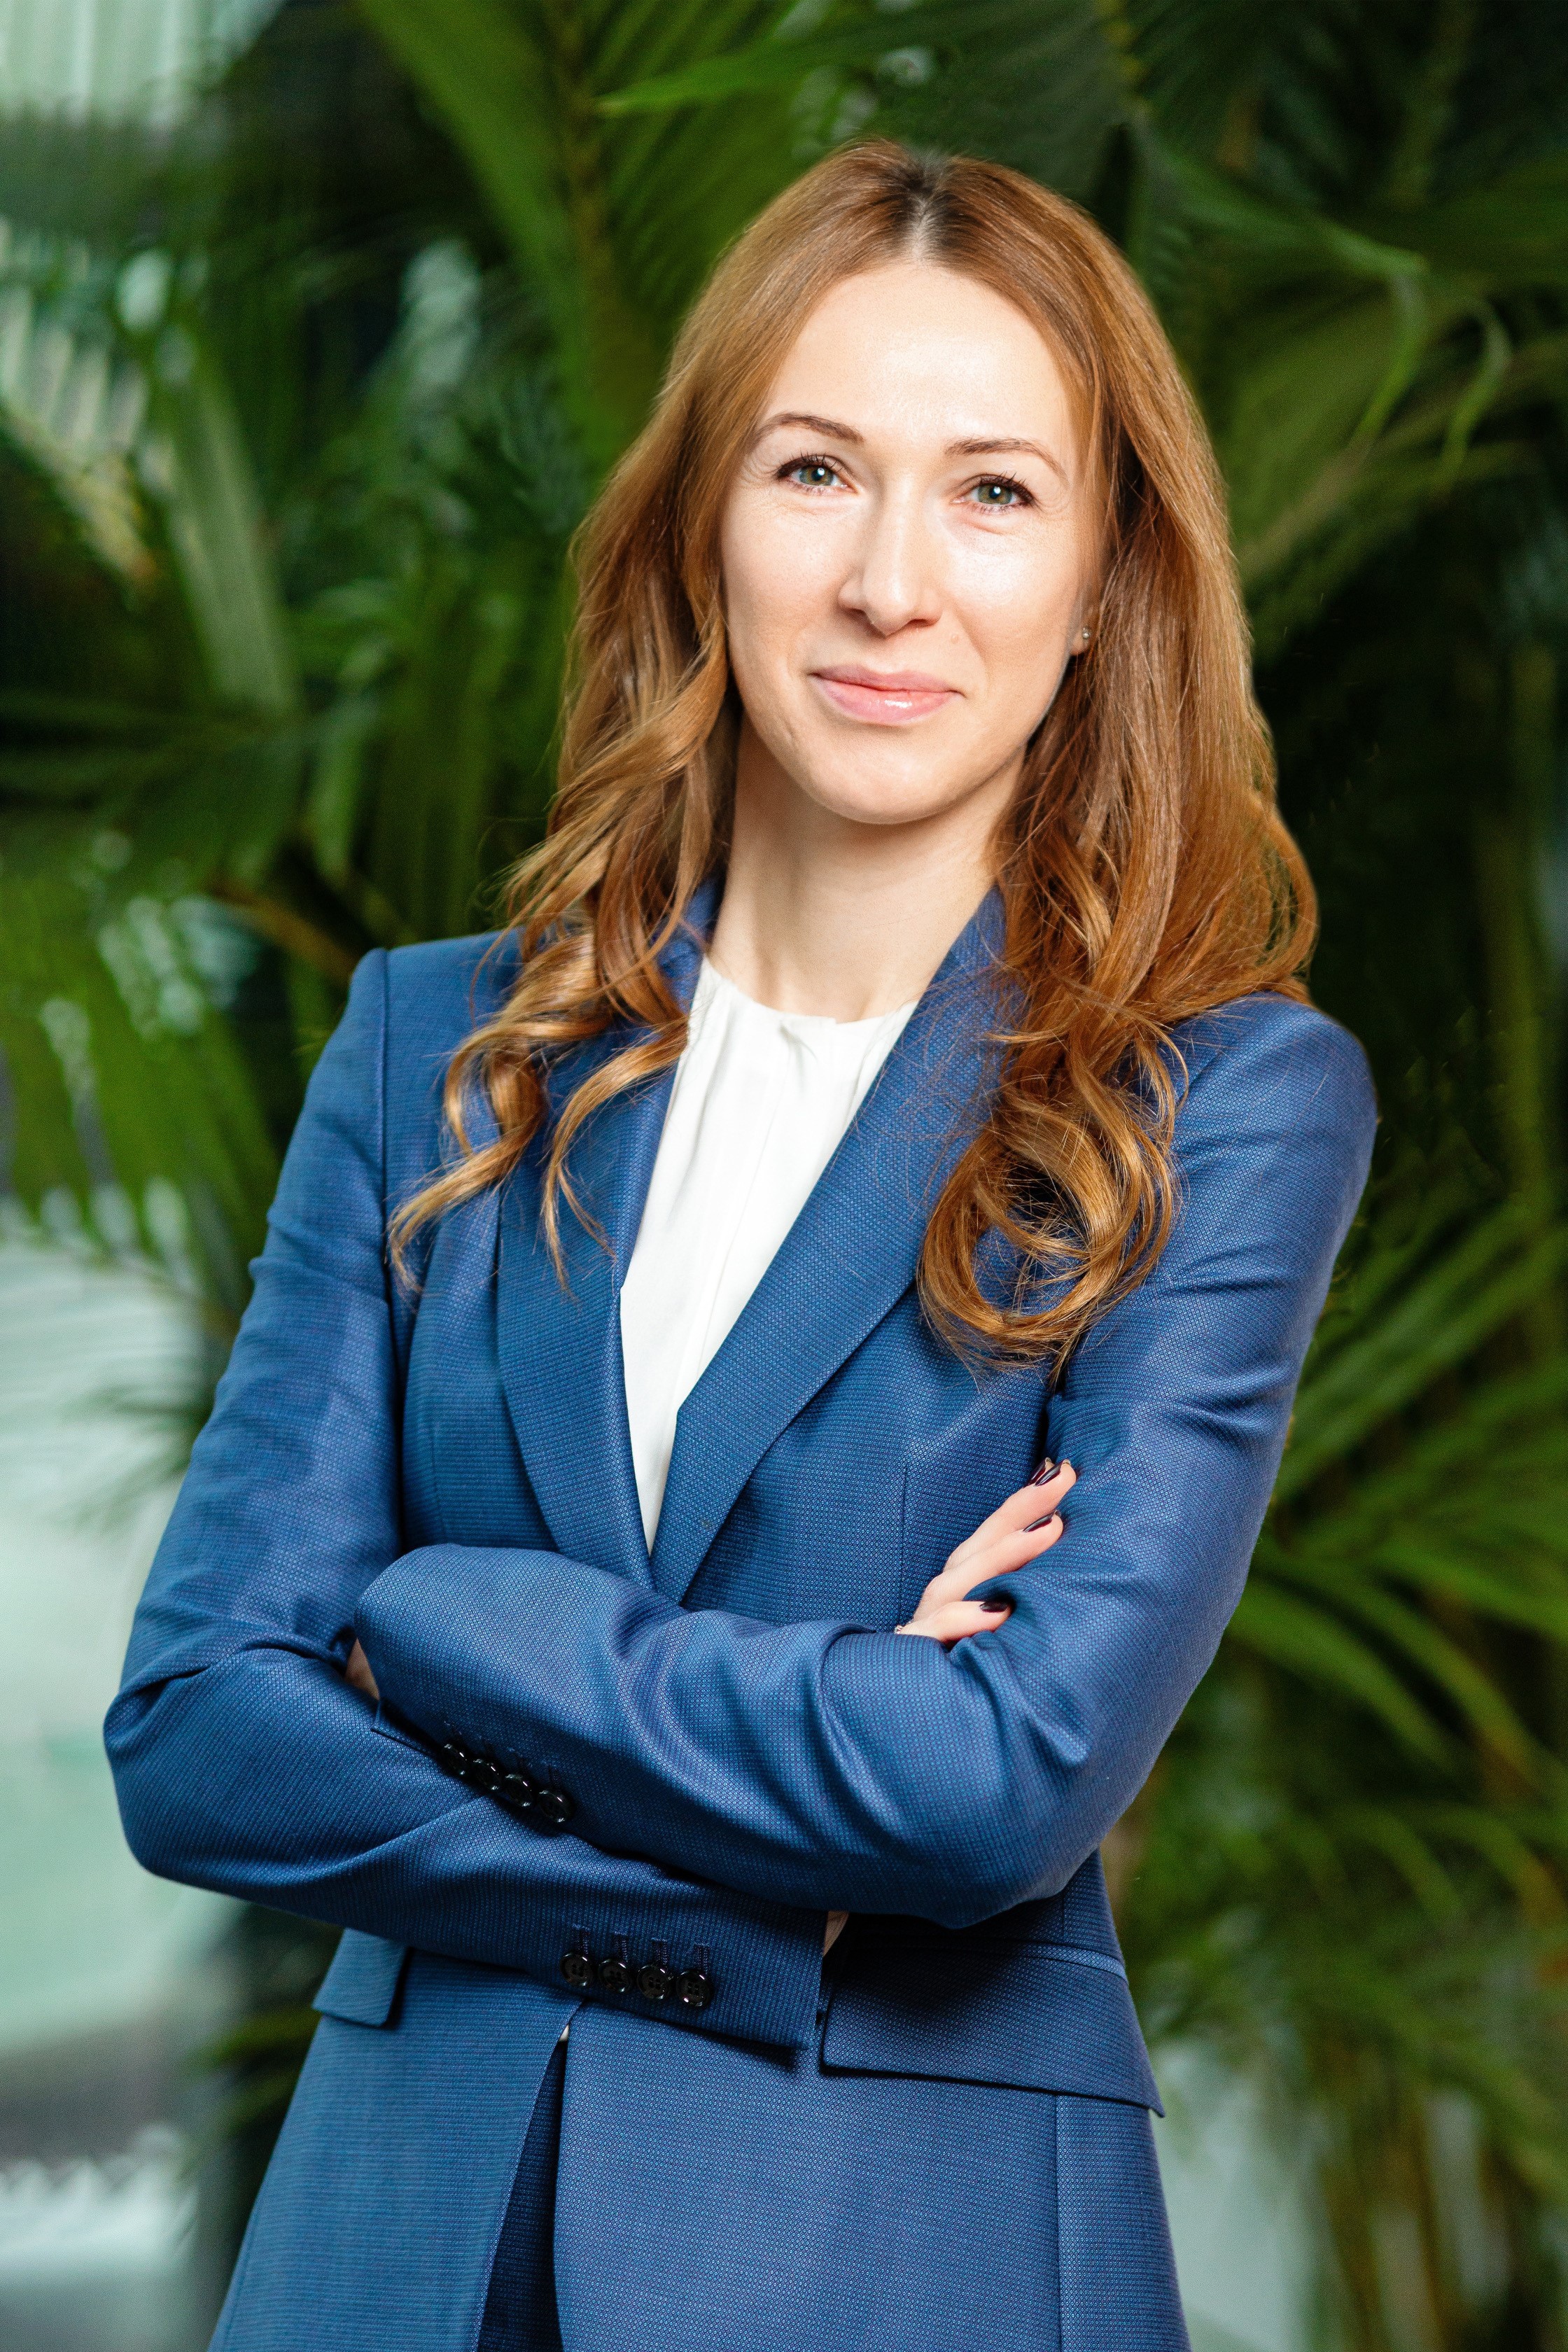 Grupul american bancar Citi o numeşte pe Mihaela Peneş în funcţia de director trezorerie şi pieţe financiare pentru România şi Bulgaria